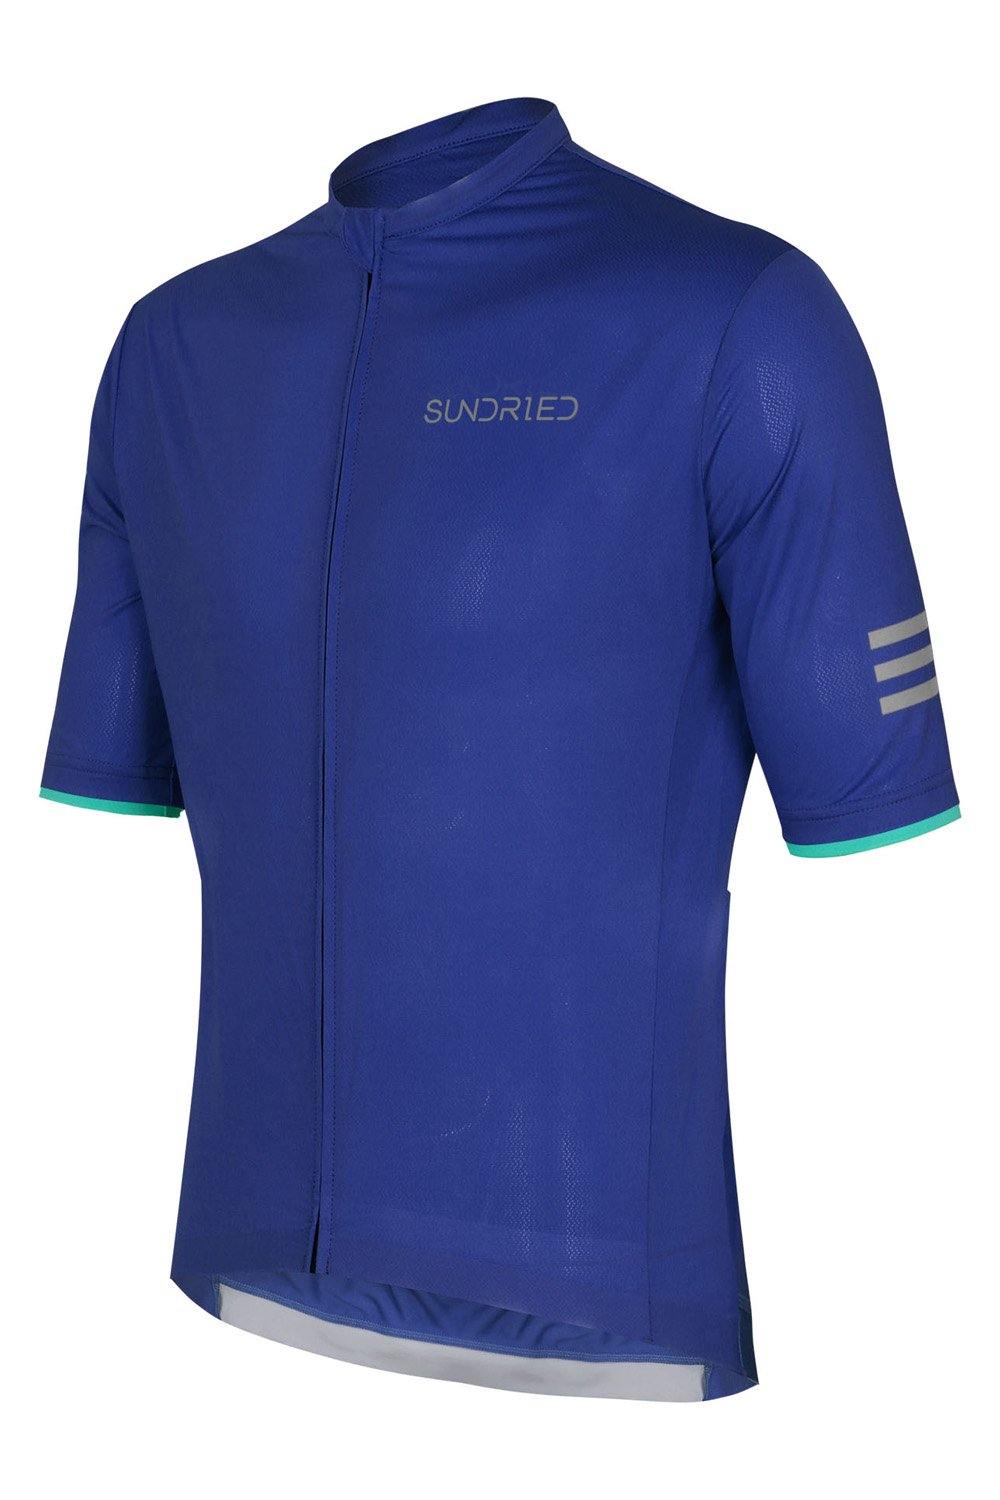 Sundried Apex Men's Short Sleeve Jersey Short Sleeve Jersey XL Blue SD0339 XL Blue Activewear